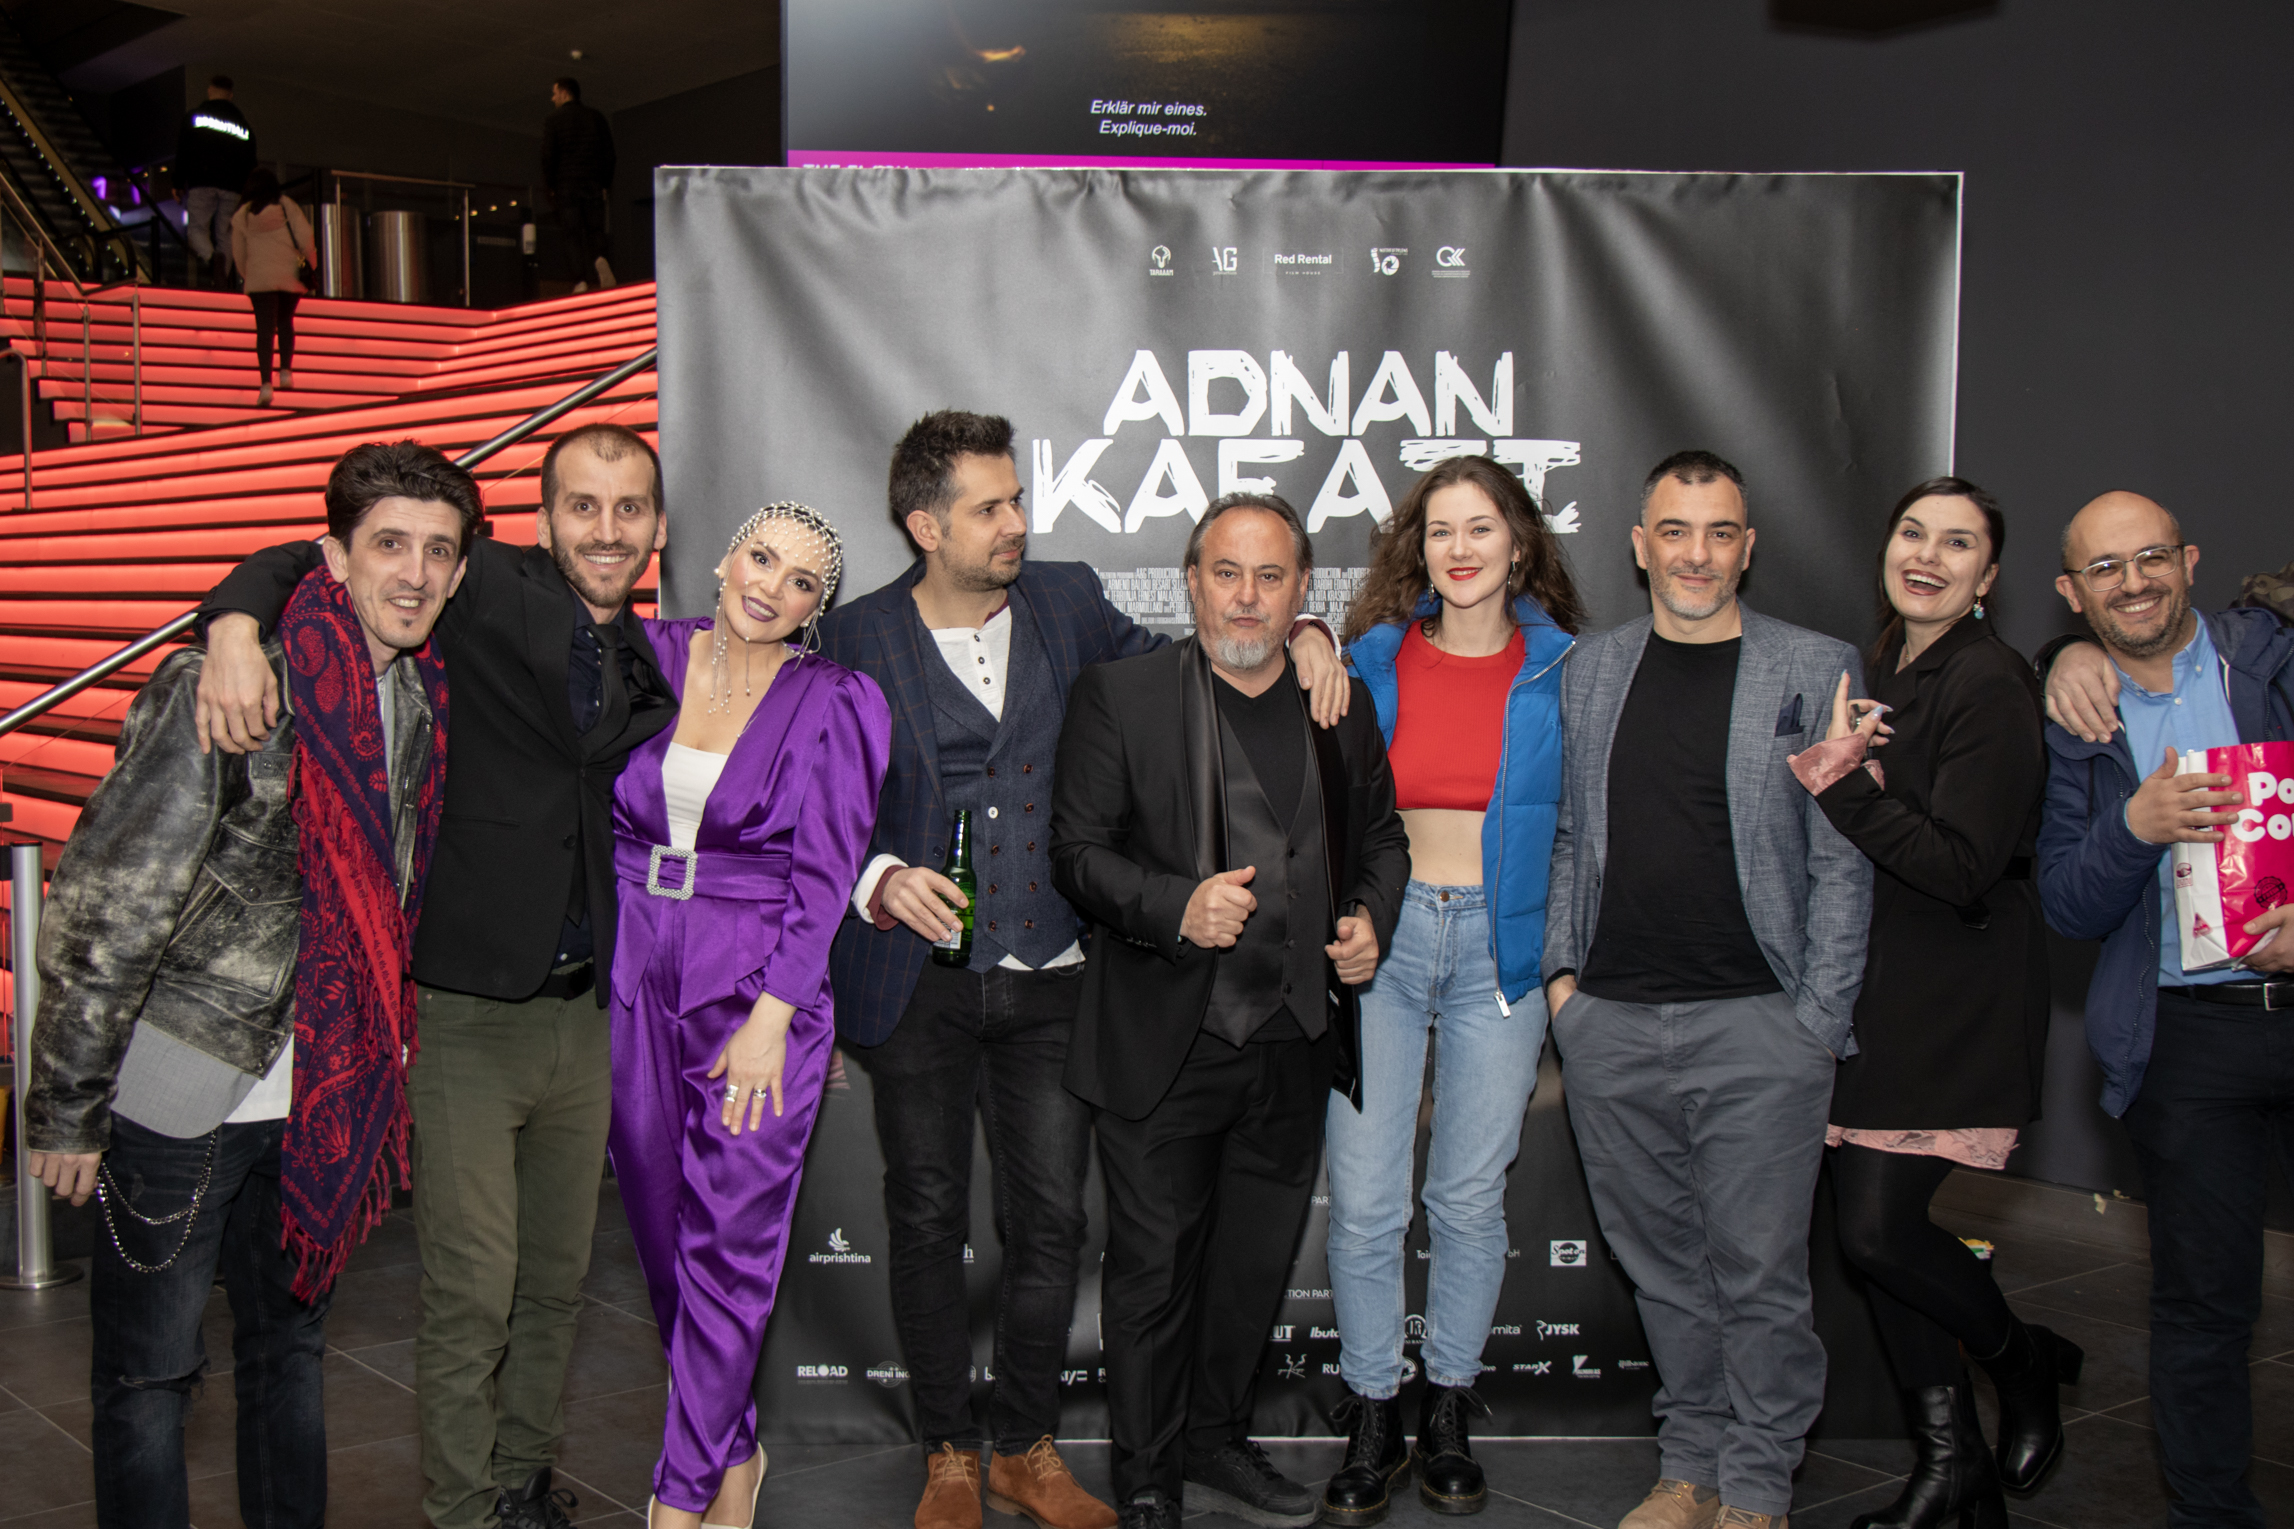 Publiku shqiptar i Cyrihut mirëpriti premierën e filmit “Adnan kafazi”